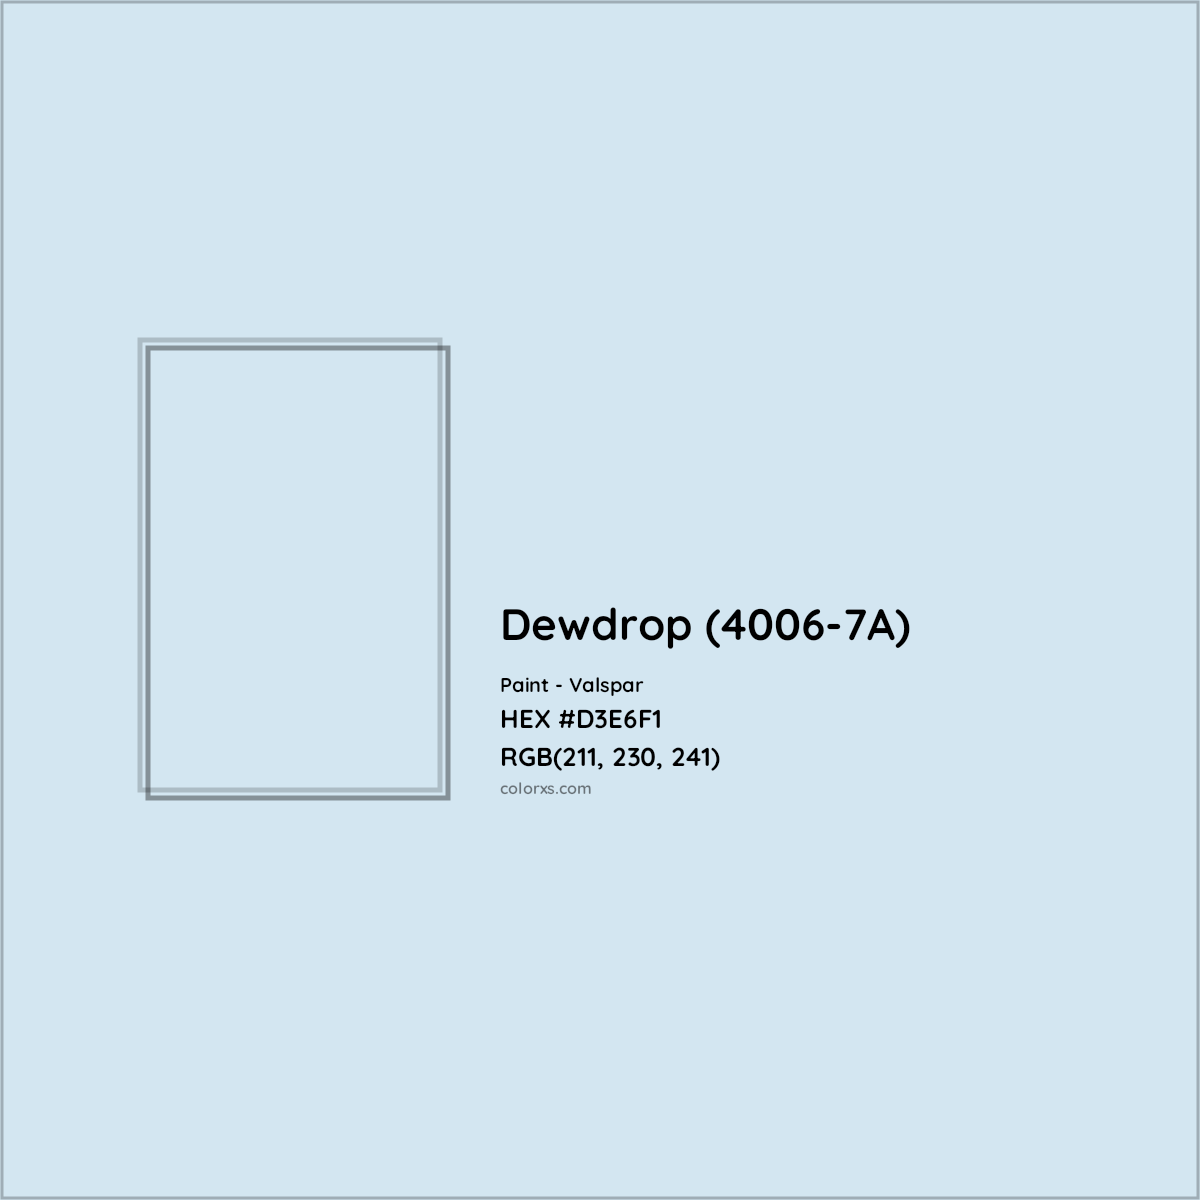 HEX #D3E6F1 Dewdrop (4006-7A) Paint Valspar - Color Code